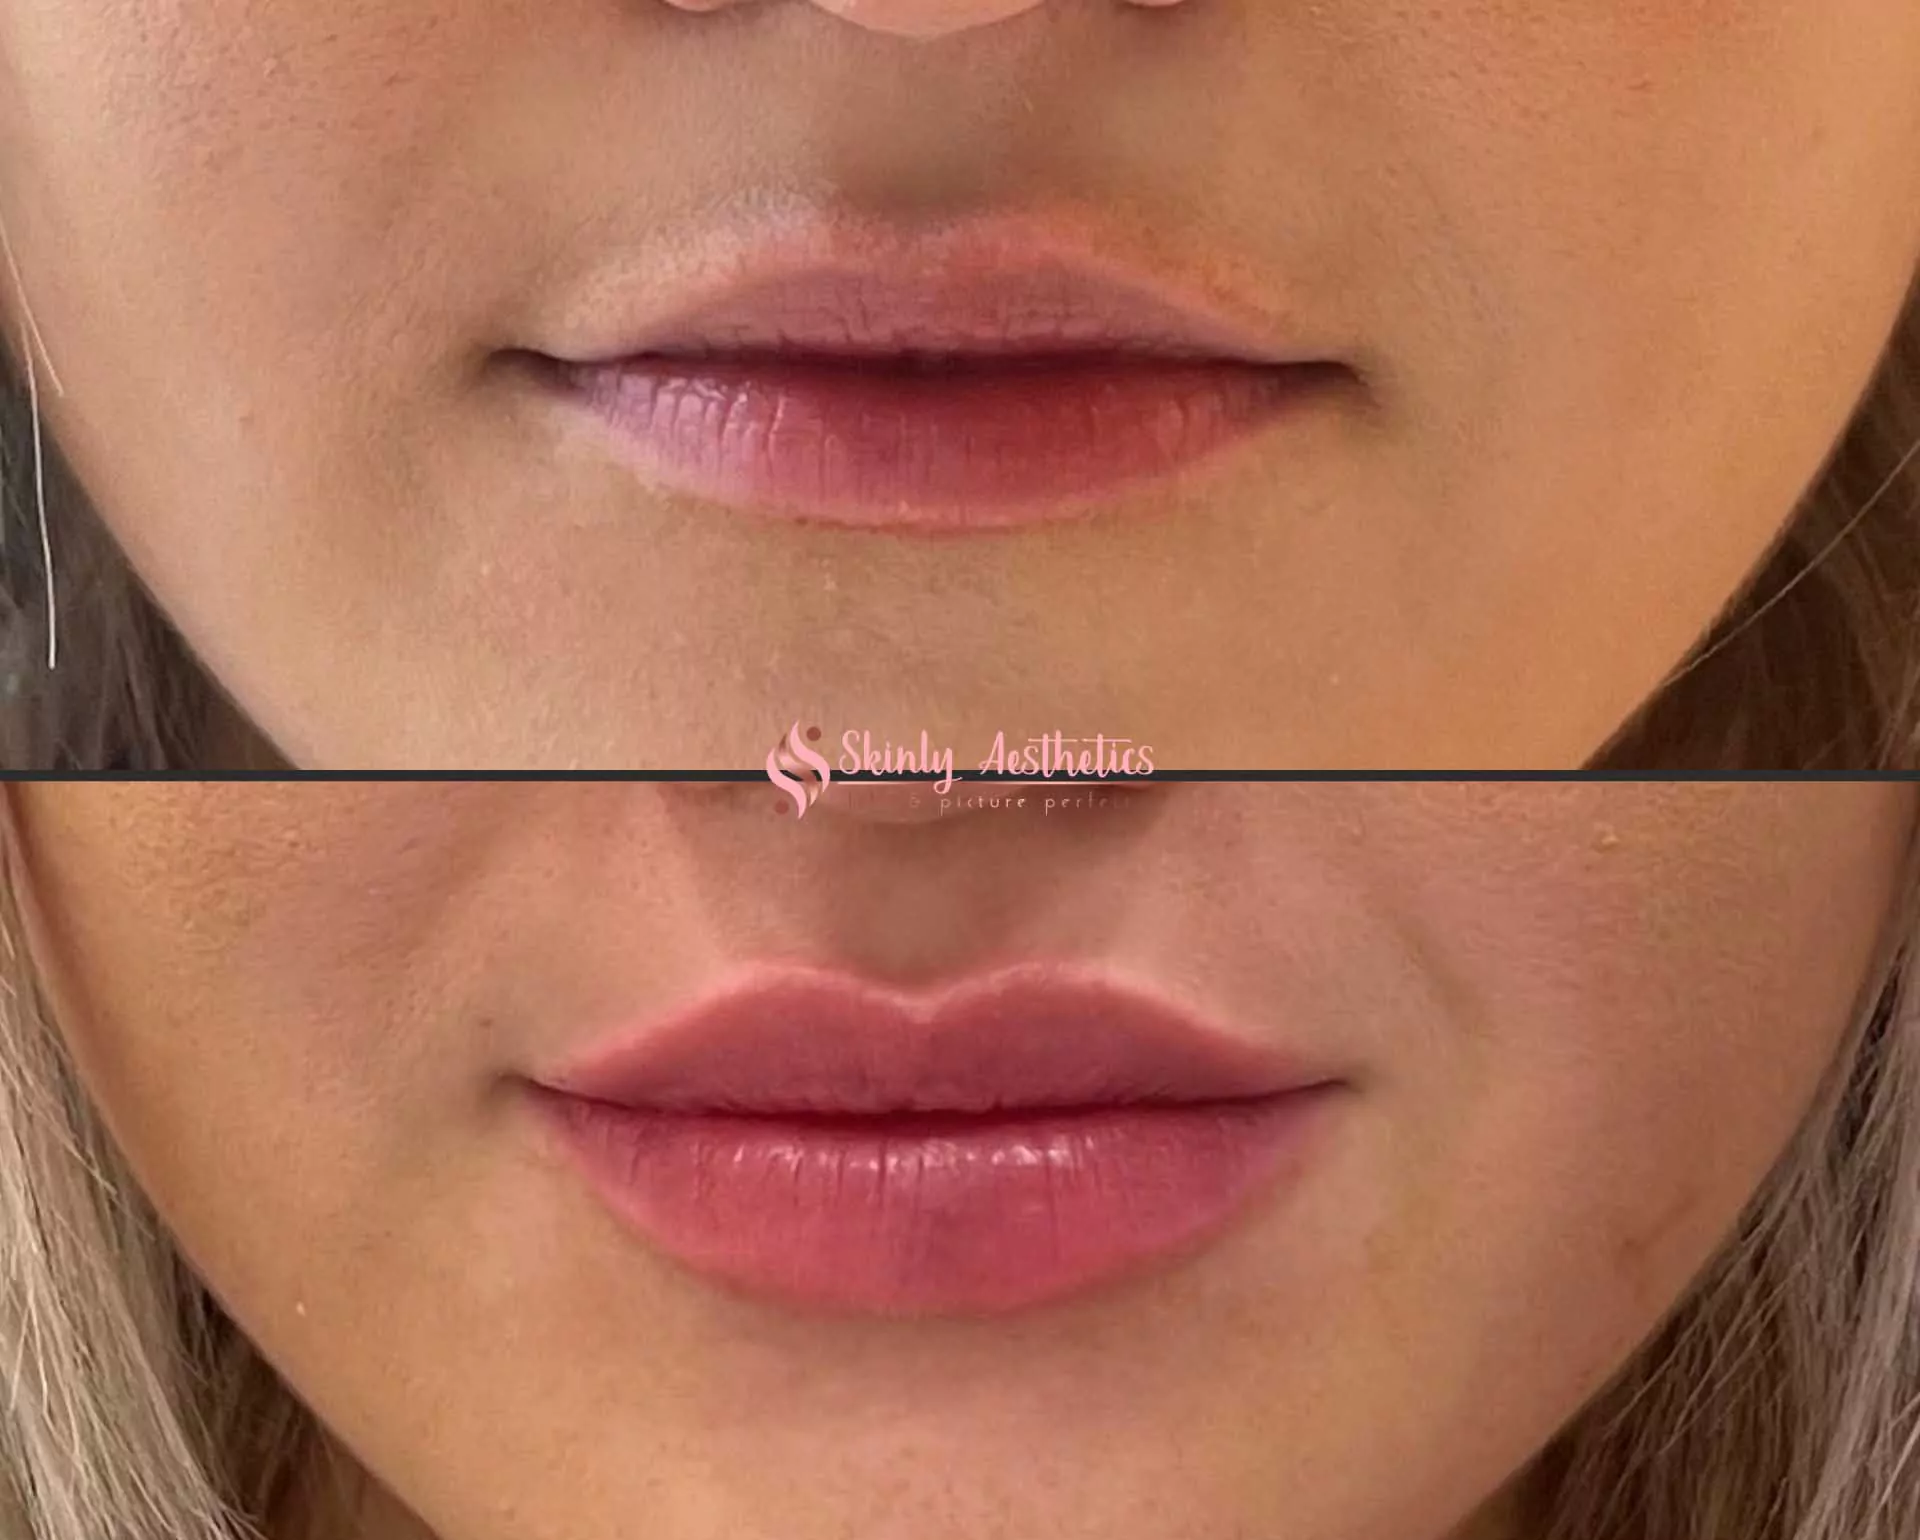 subtle lip filler augmentation with RHA2 filler